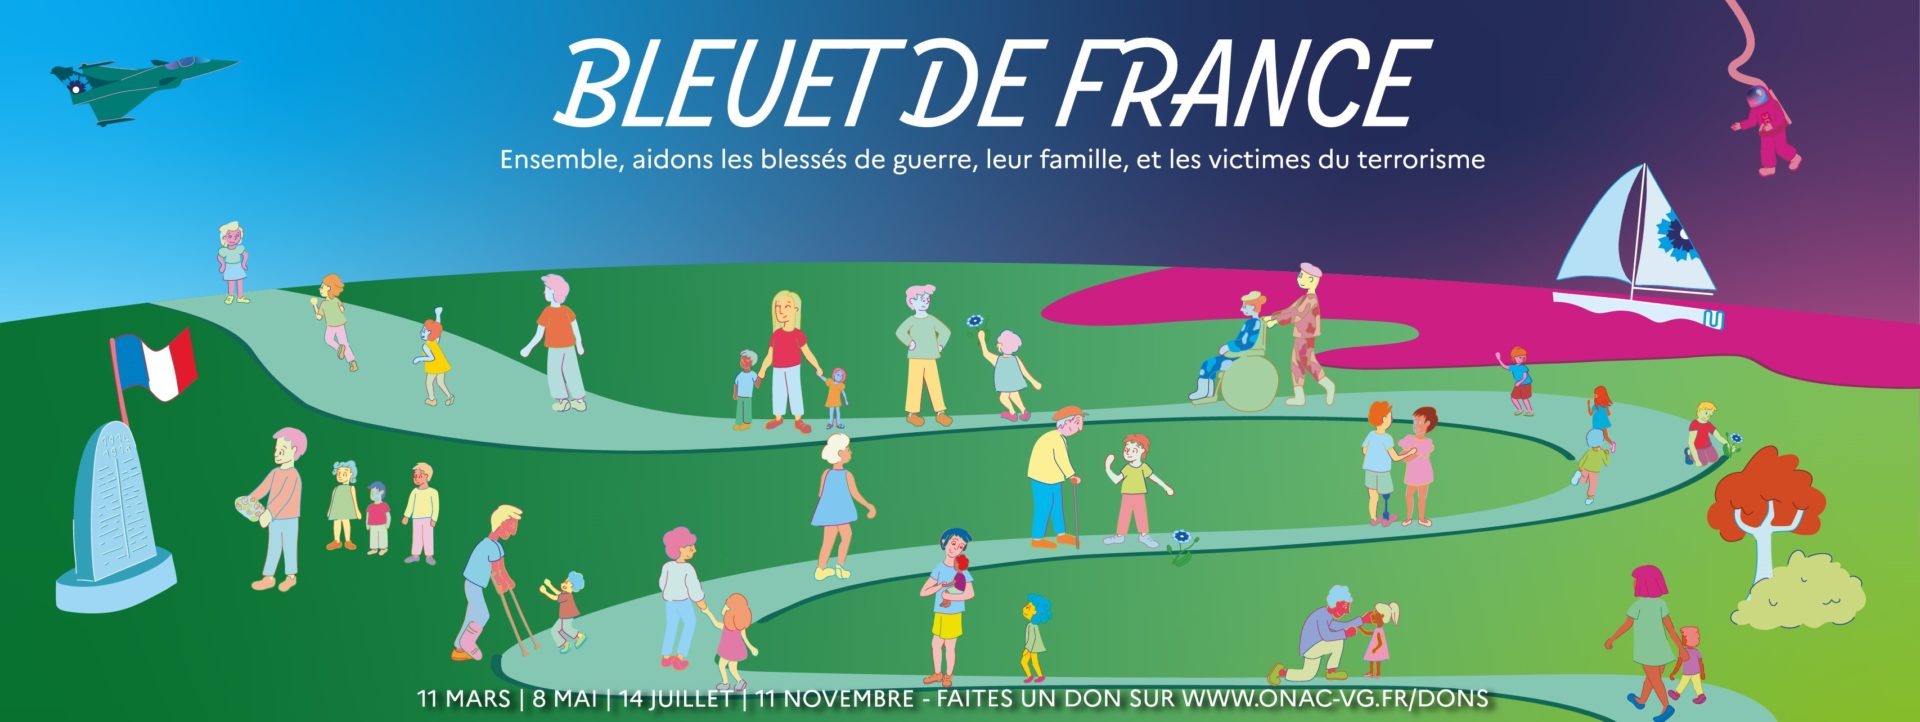 Le DFCO soutient le Bleuet de France !